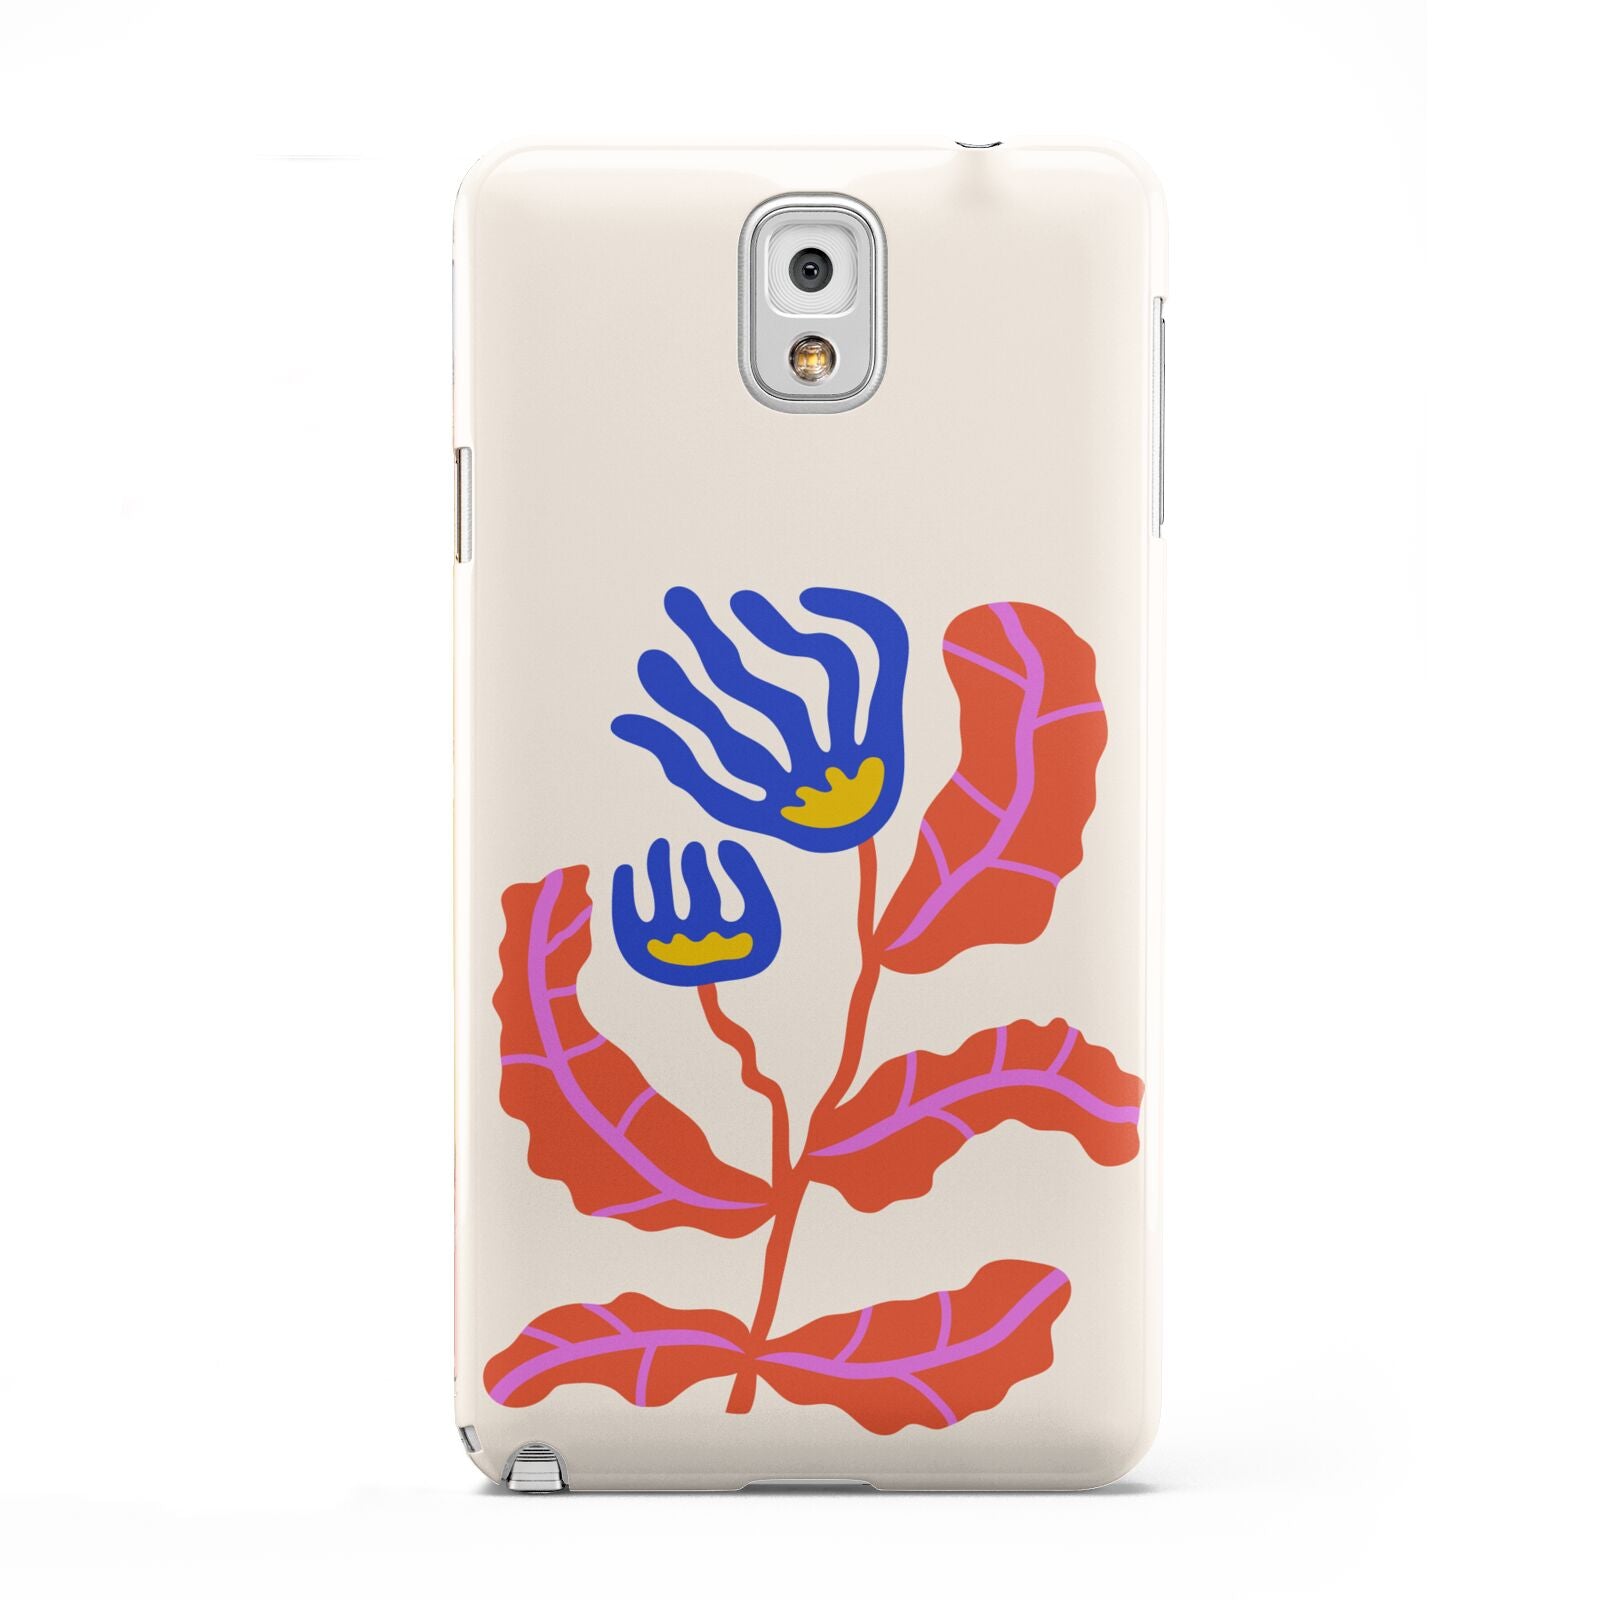 Contemporary Floral Samsung Galaxy Note 3 Case